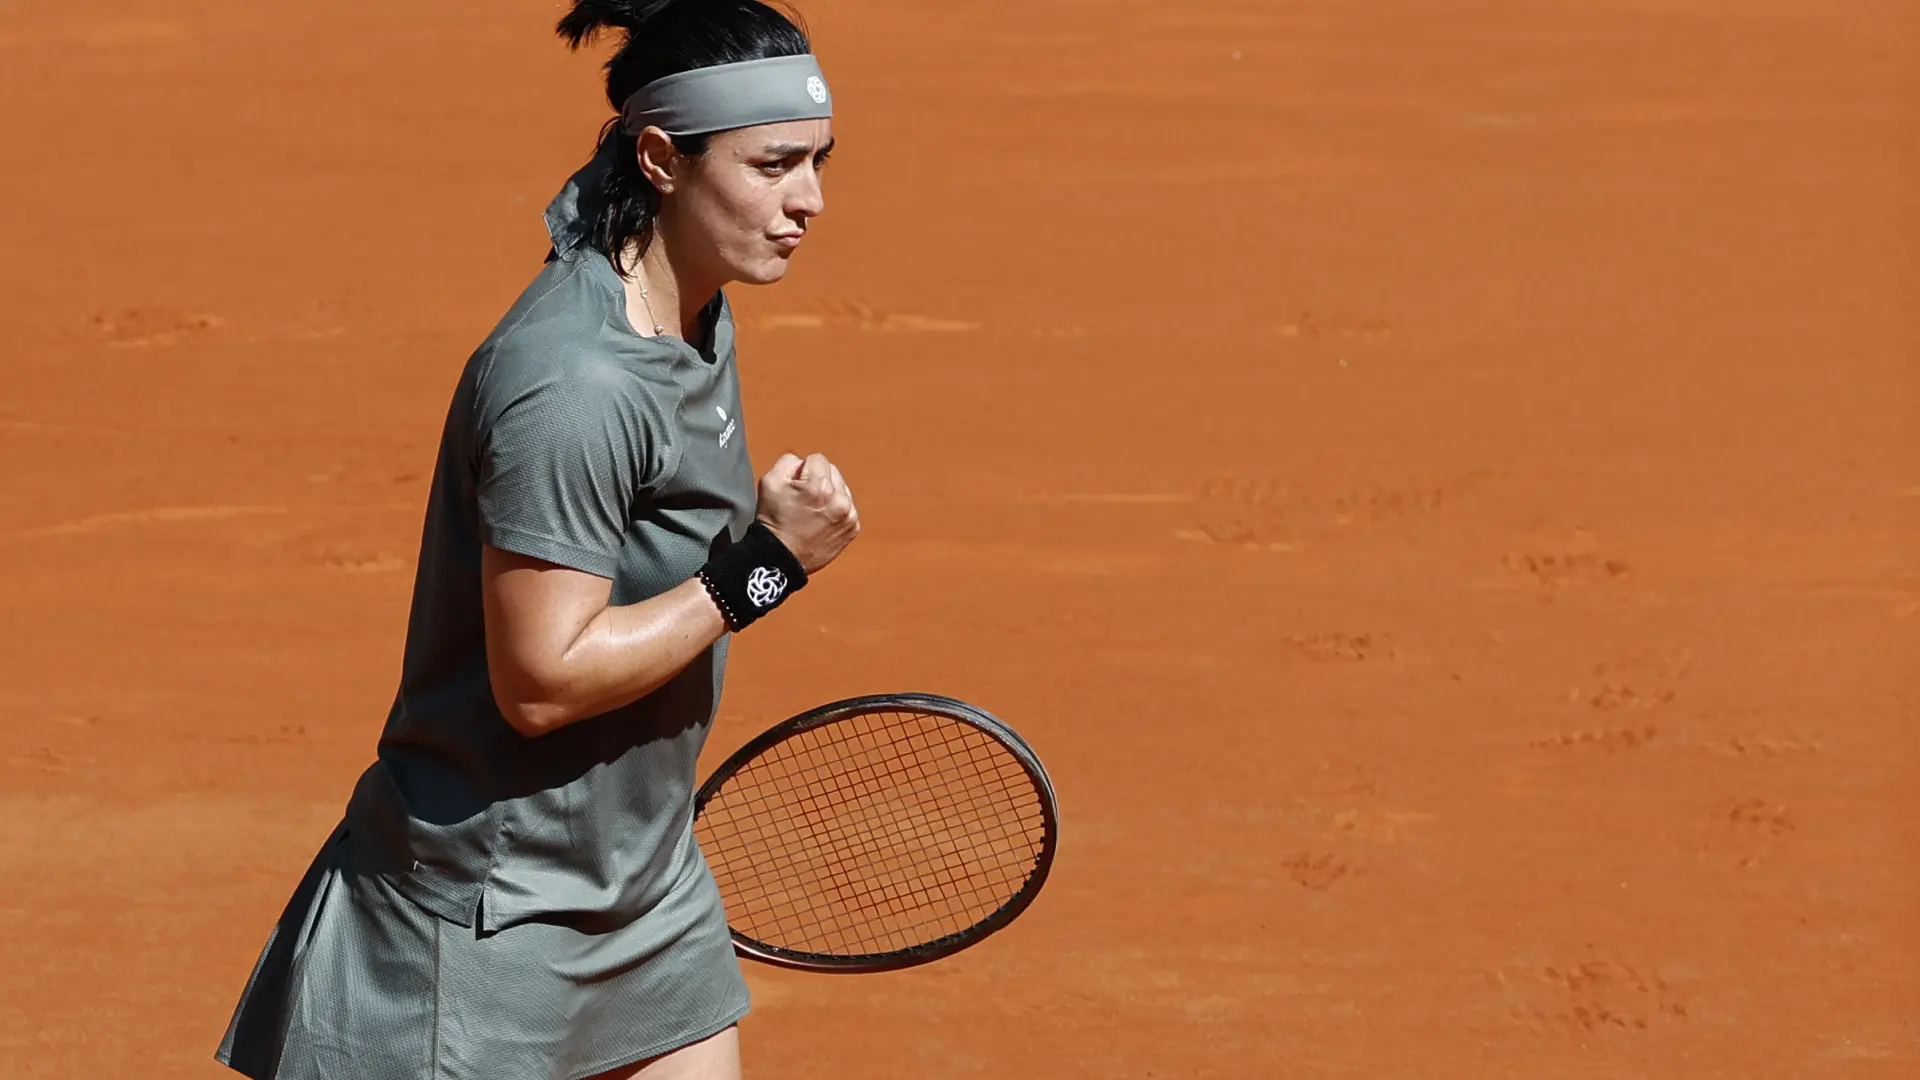 "Deberían respetar más a la mujer": el palo de la tenista Ons Jabeur al Mutua Madrid Open